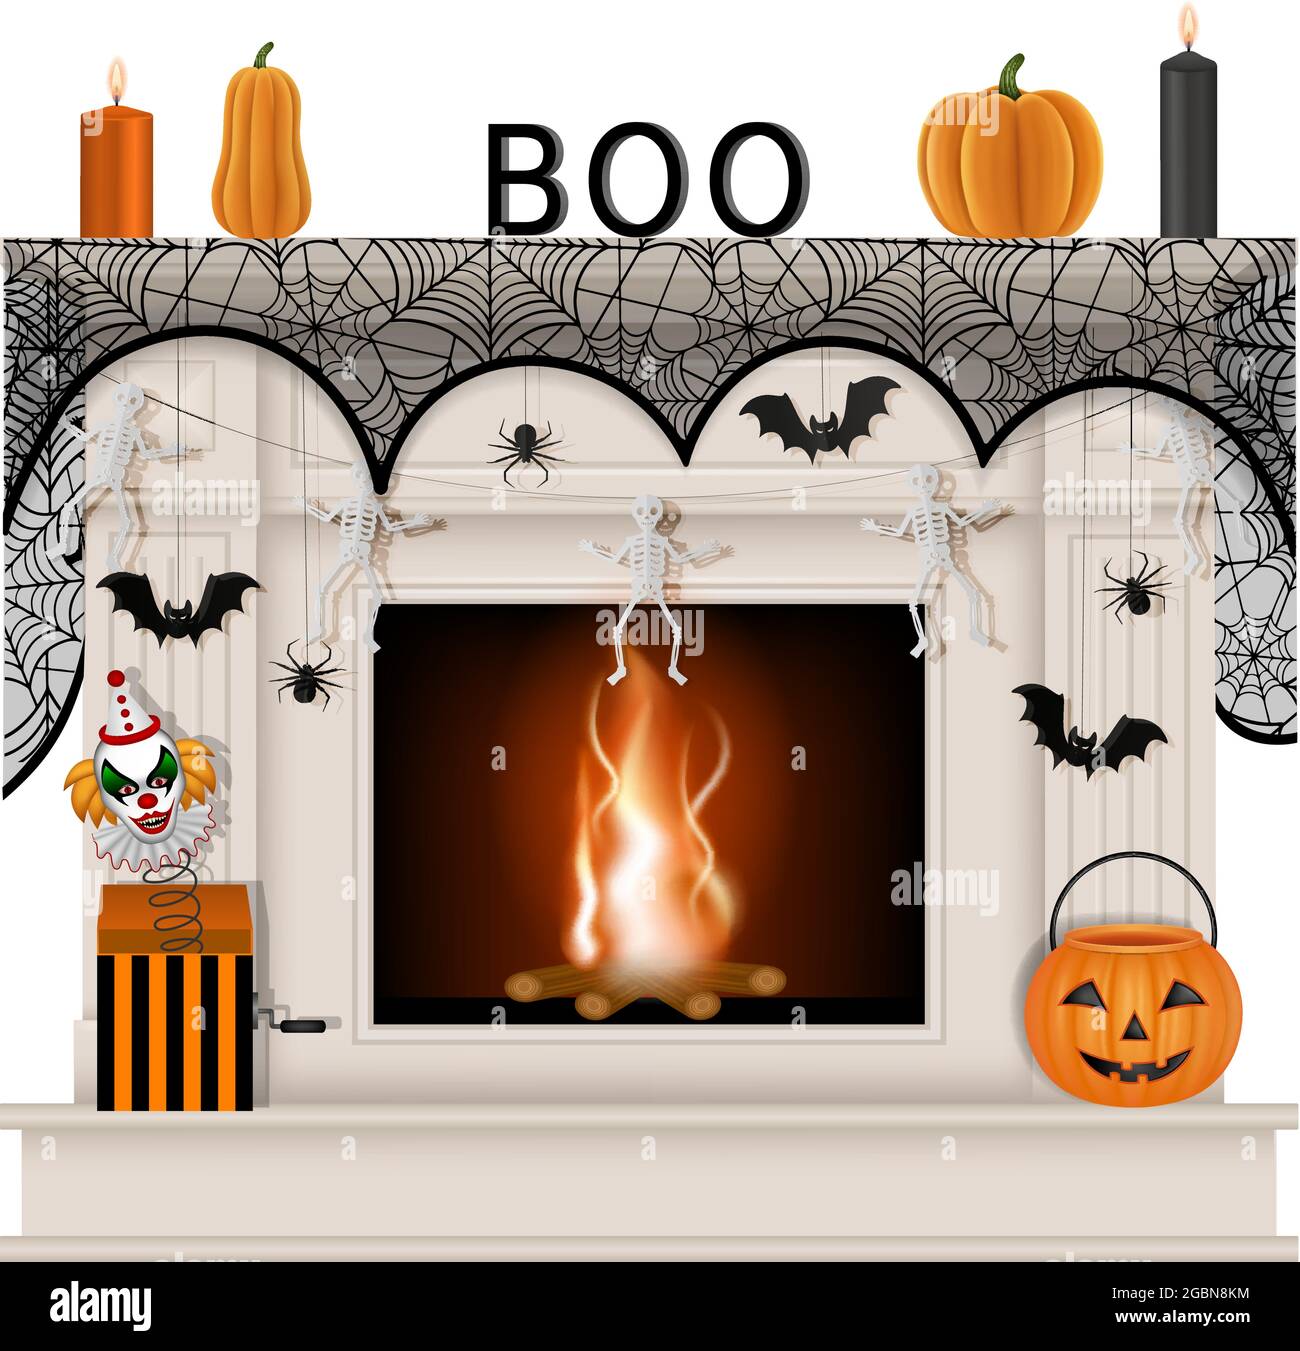 Cheminée blanche avec décorations d'halloween Illustration de Vecteur